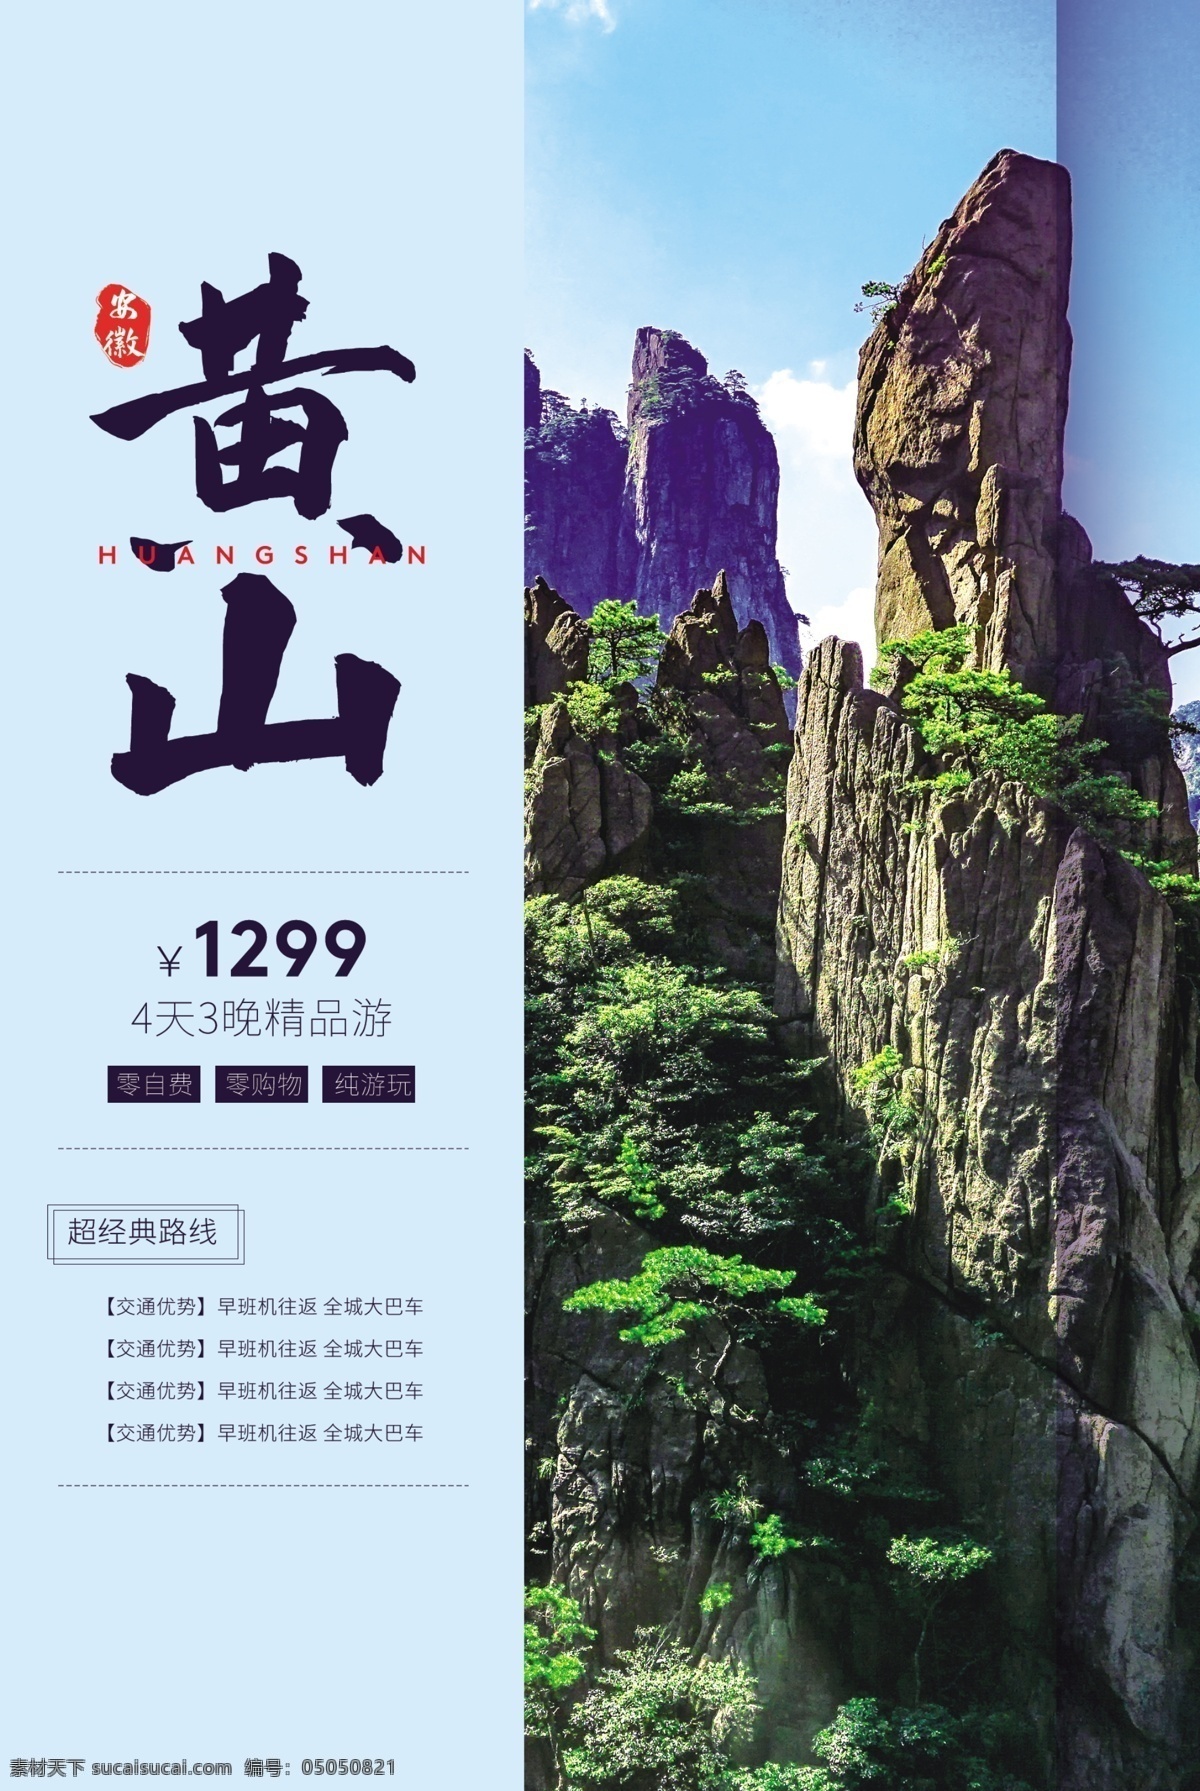 黄山旅游 旅行 宣传海报 素材图片 黄山 旅游 宣传 海报